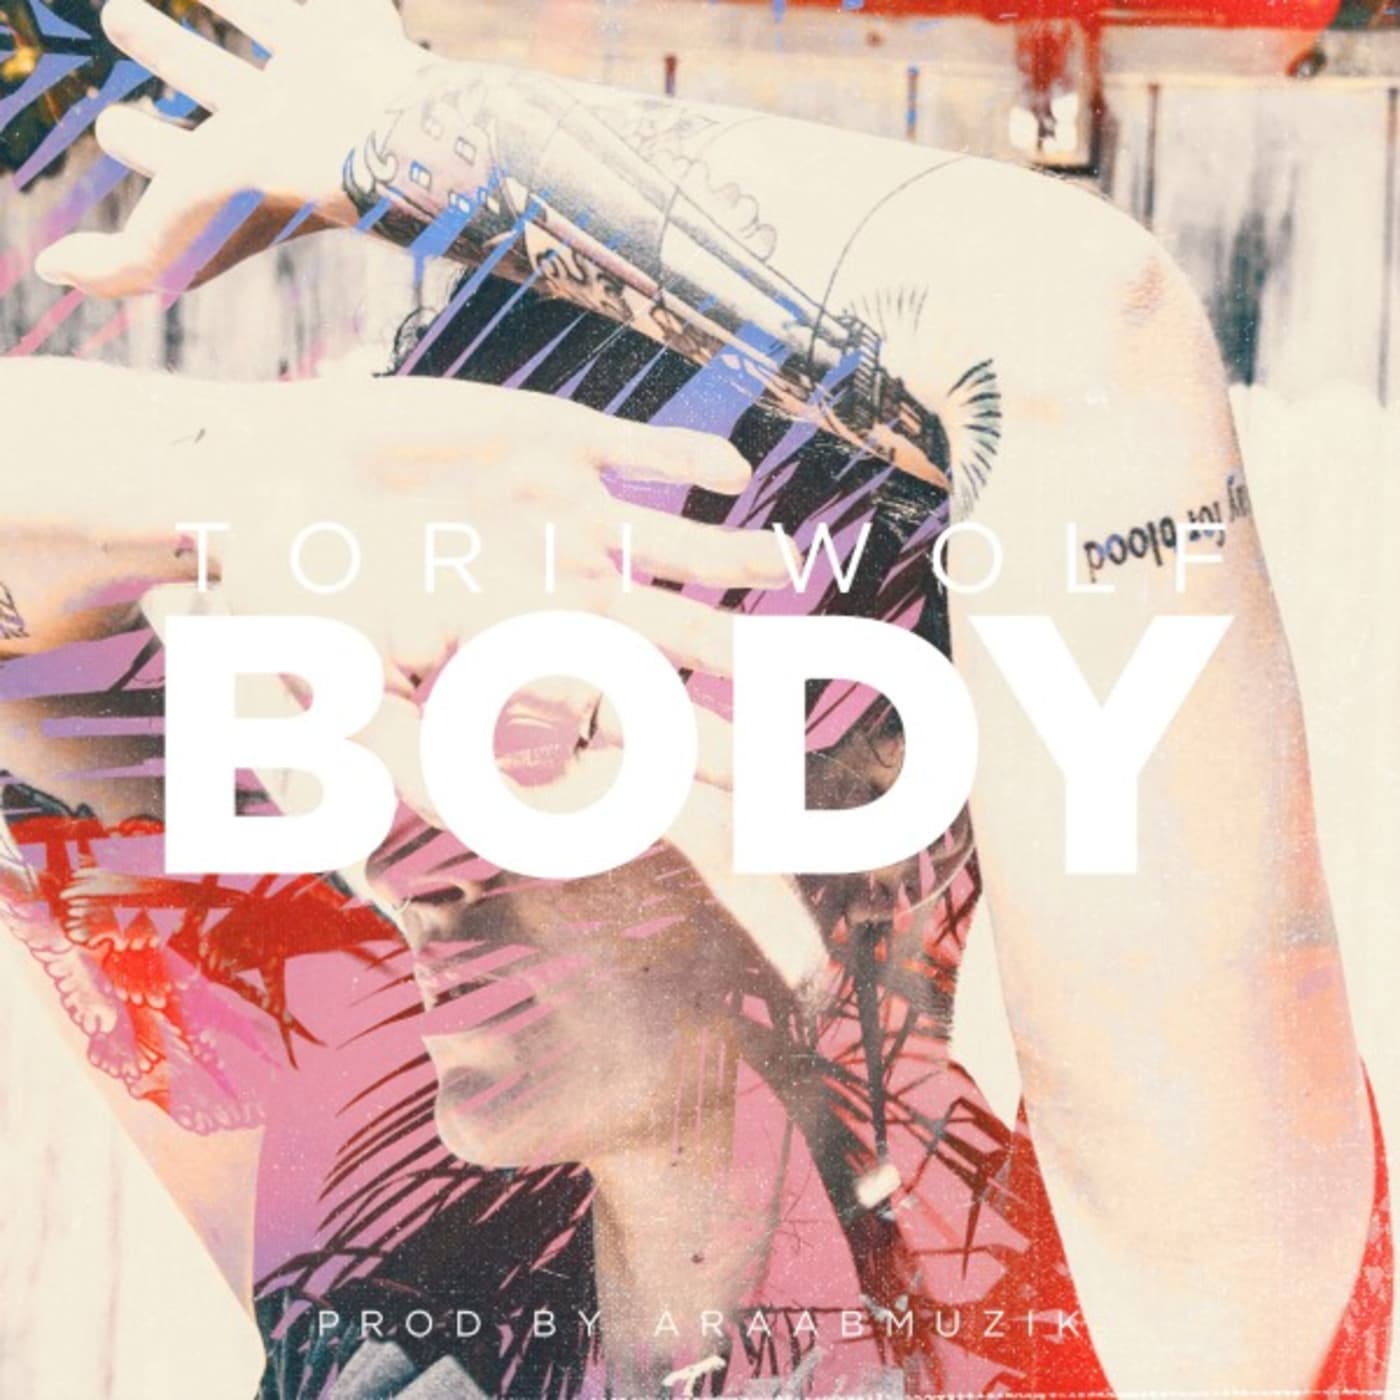 Torii Wolf "Body."